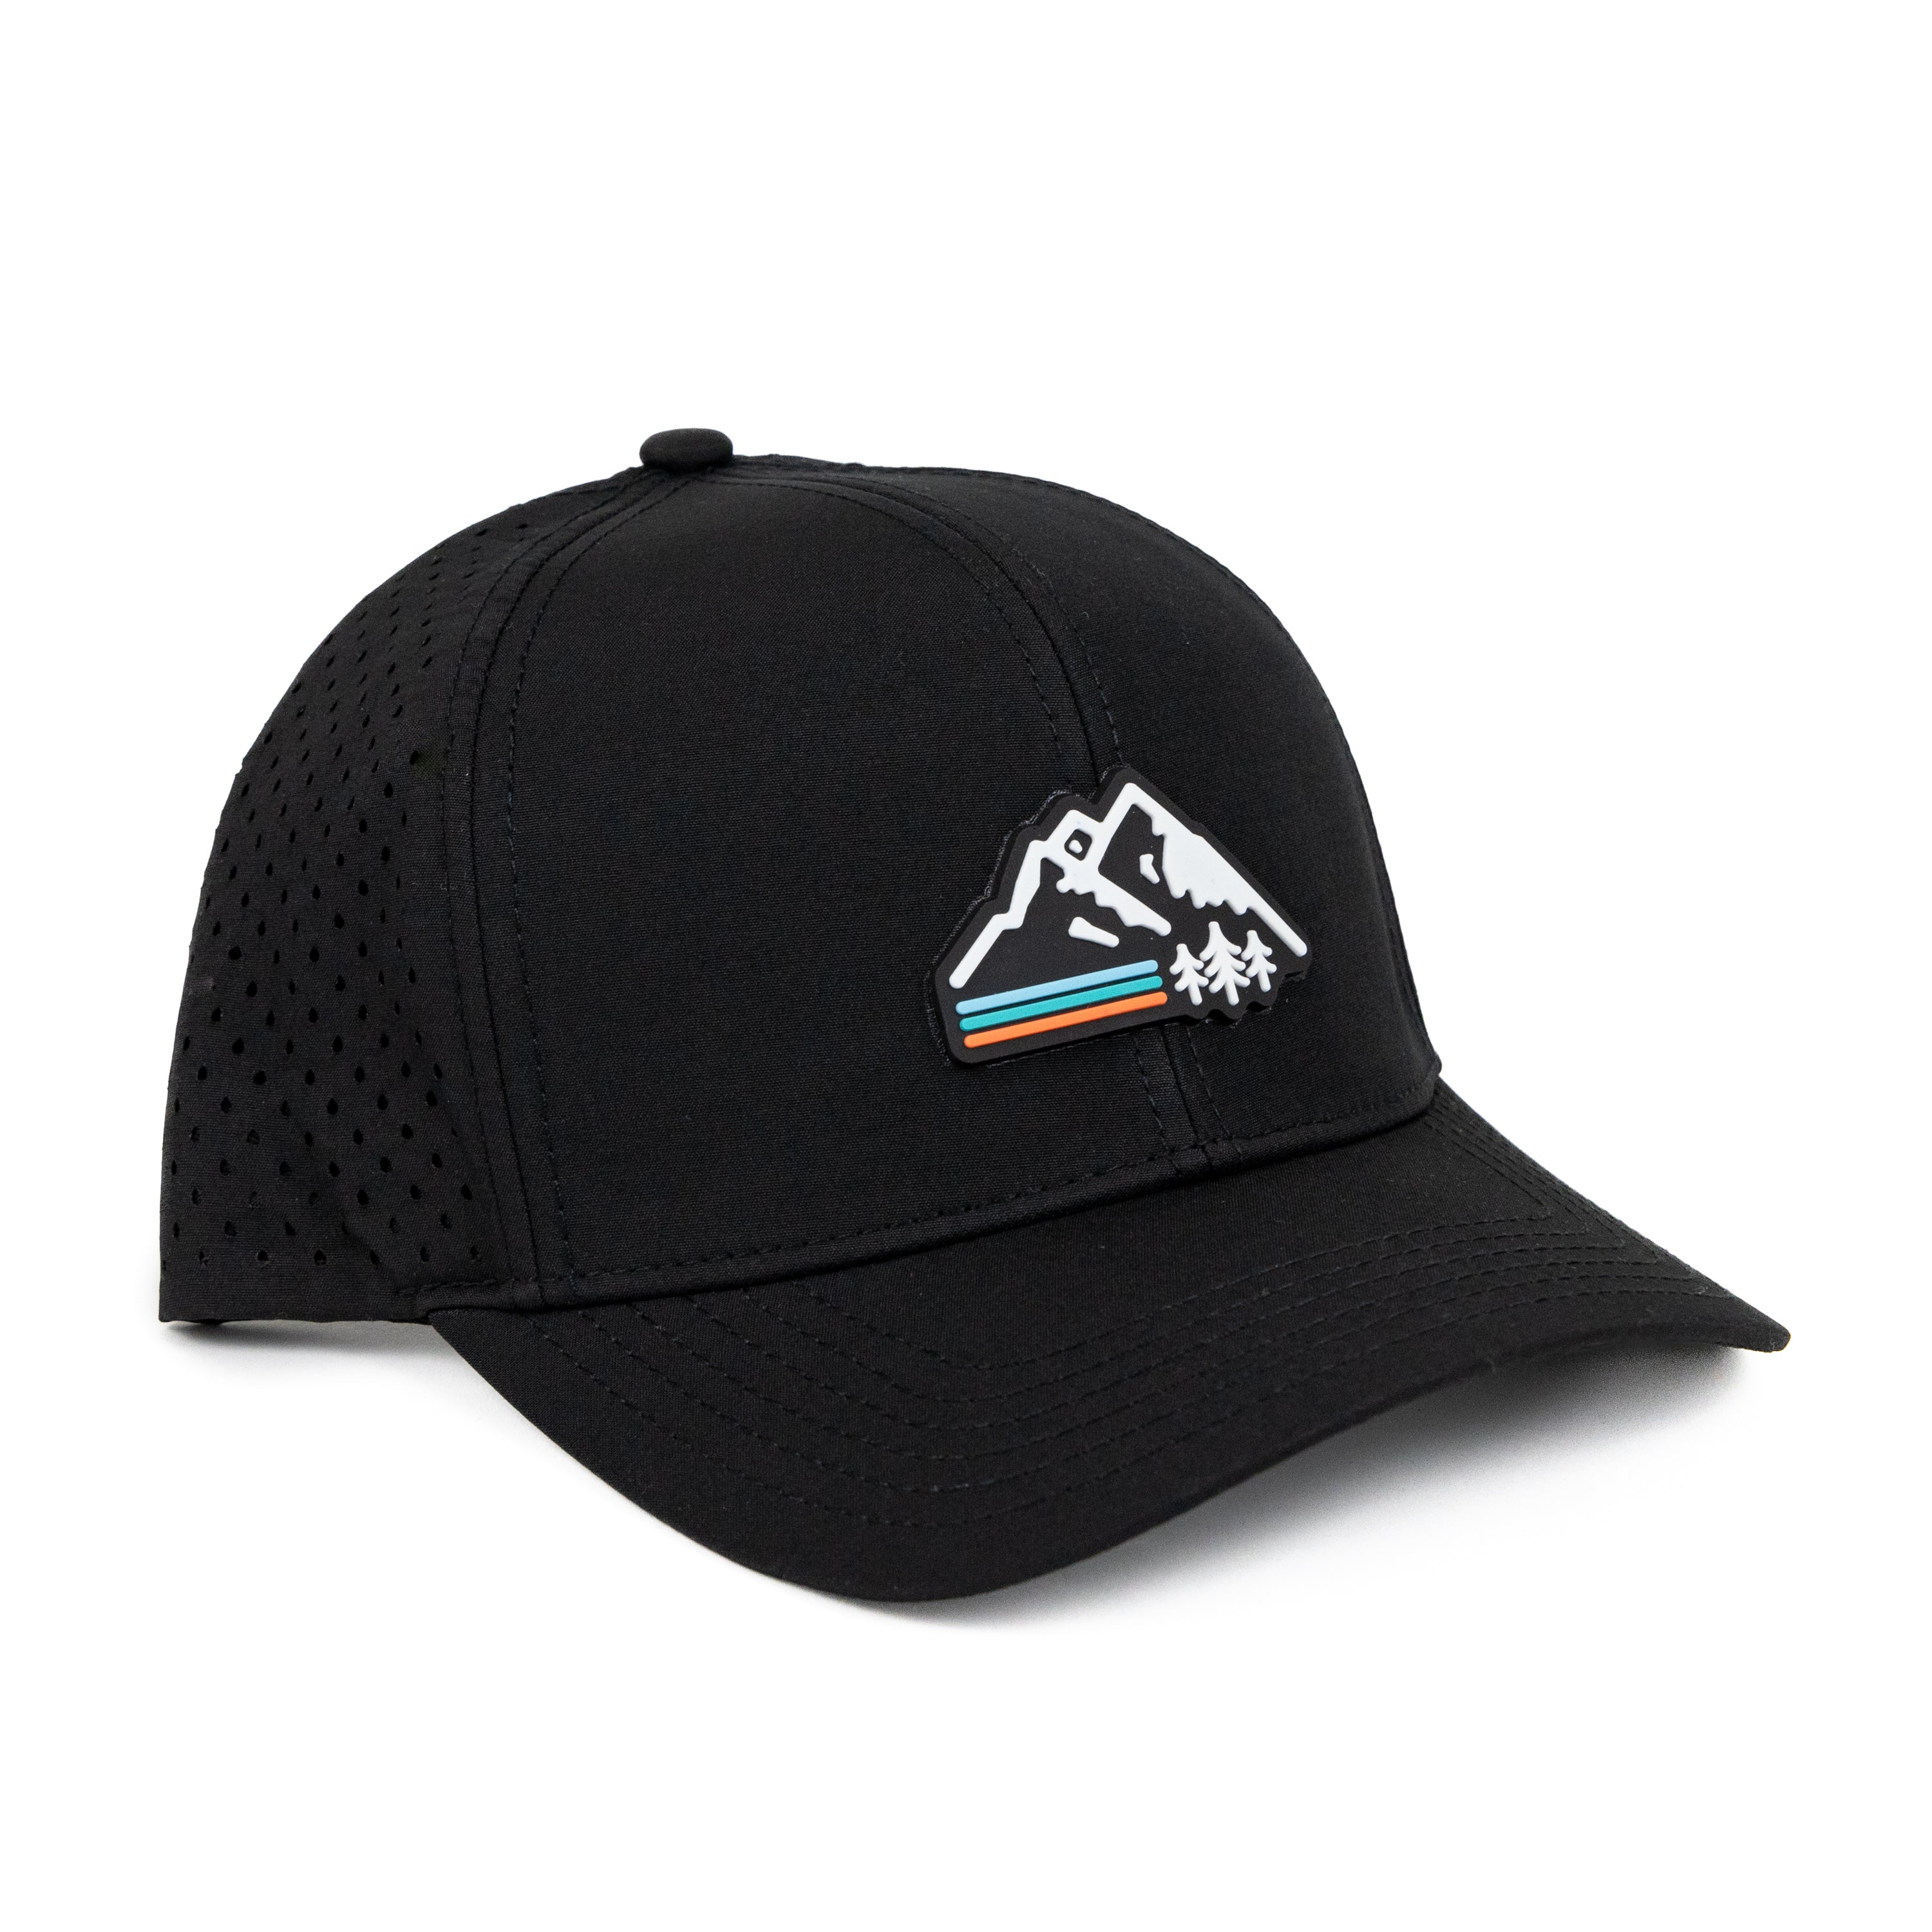 Retro Mountain AllTrek Performance Hat